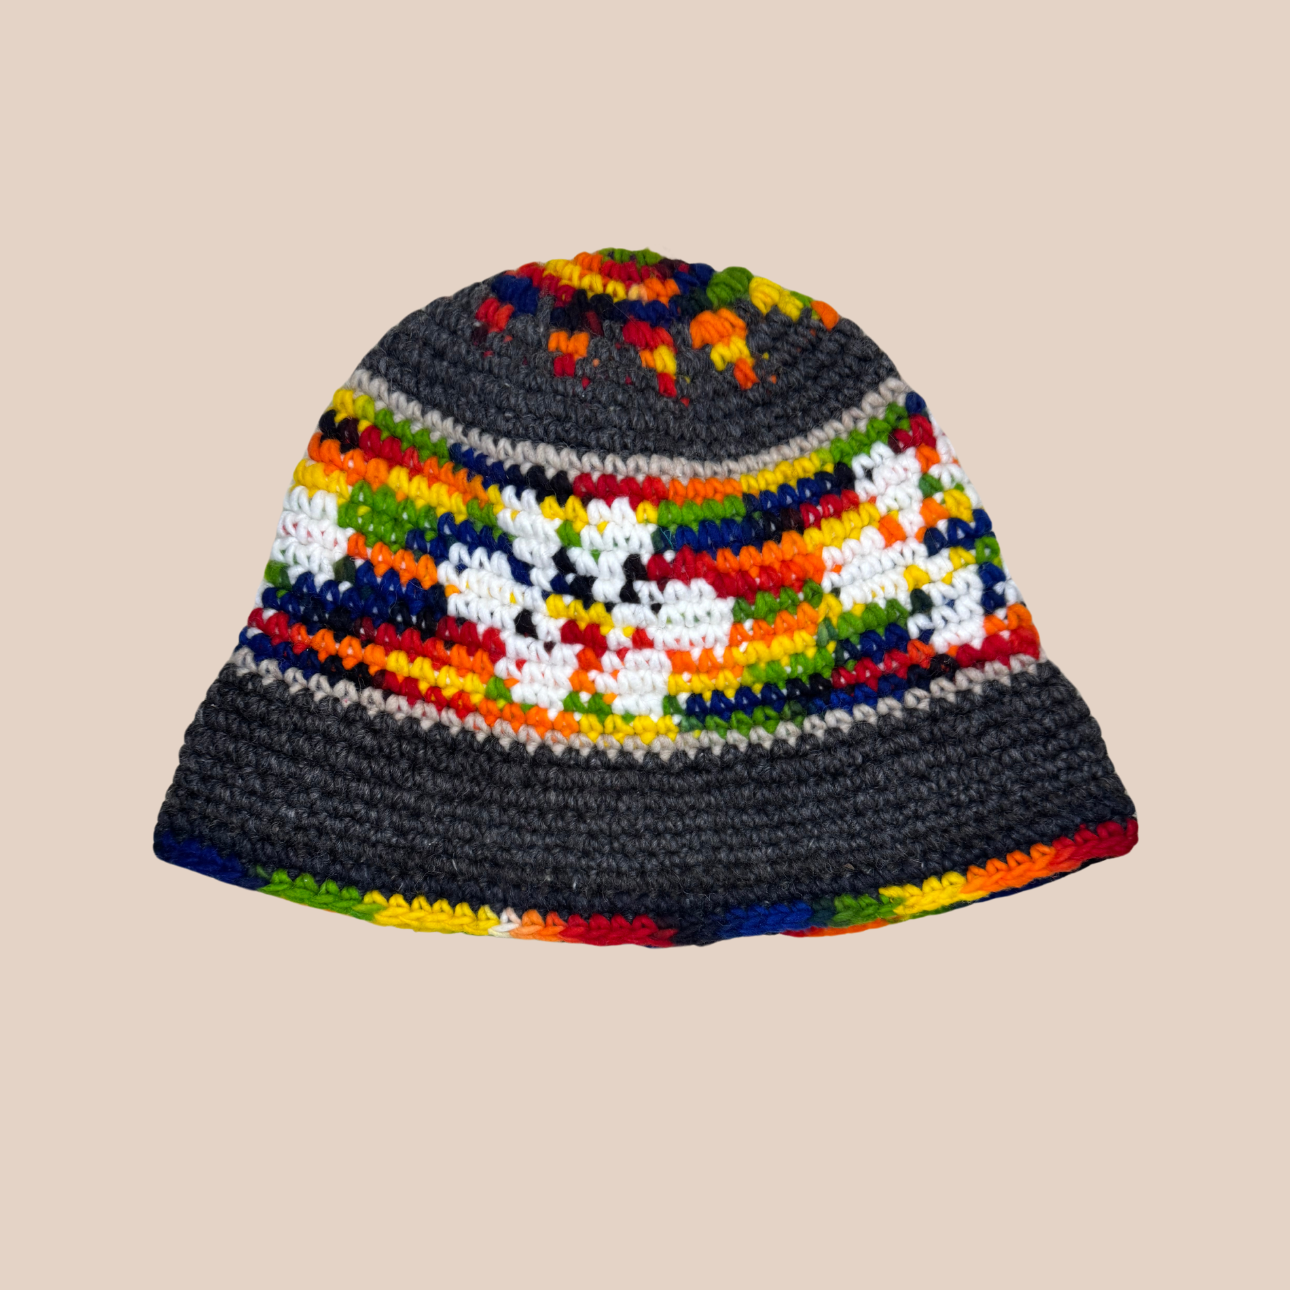 Image du bucket hat de Maison Badigo, bucket hat (bob) en laine crocheté multicolore et tendance